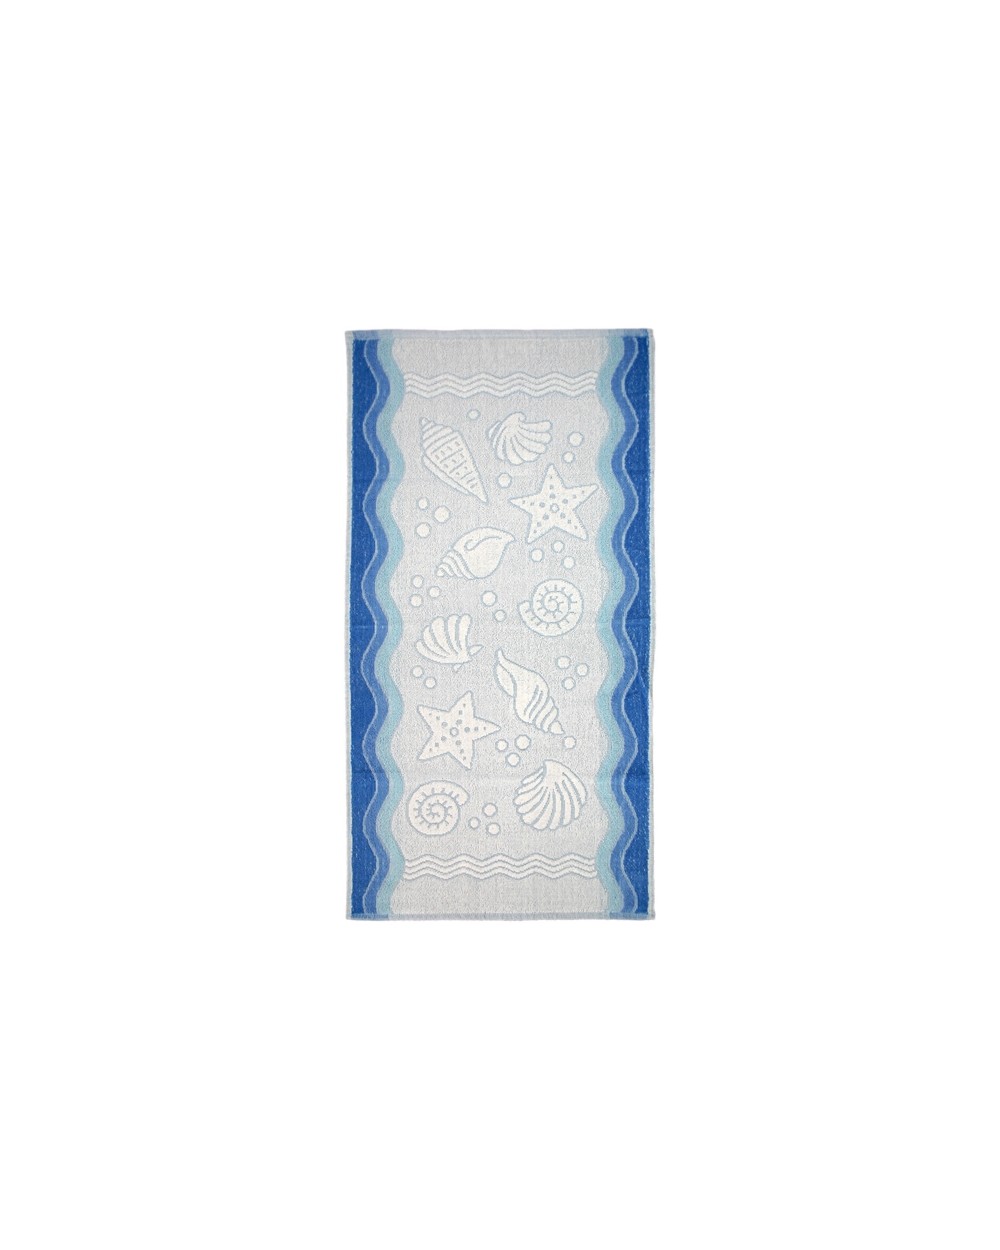 Ręcznik Flora Ocean bawełna 50x100 niebieski